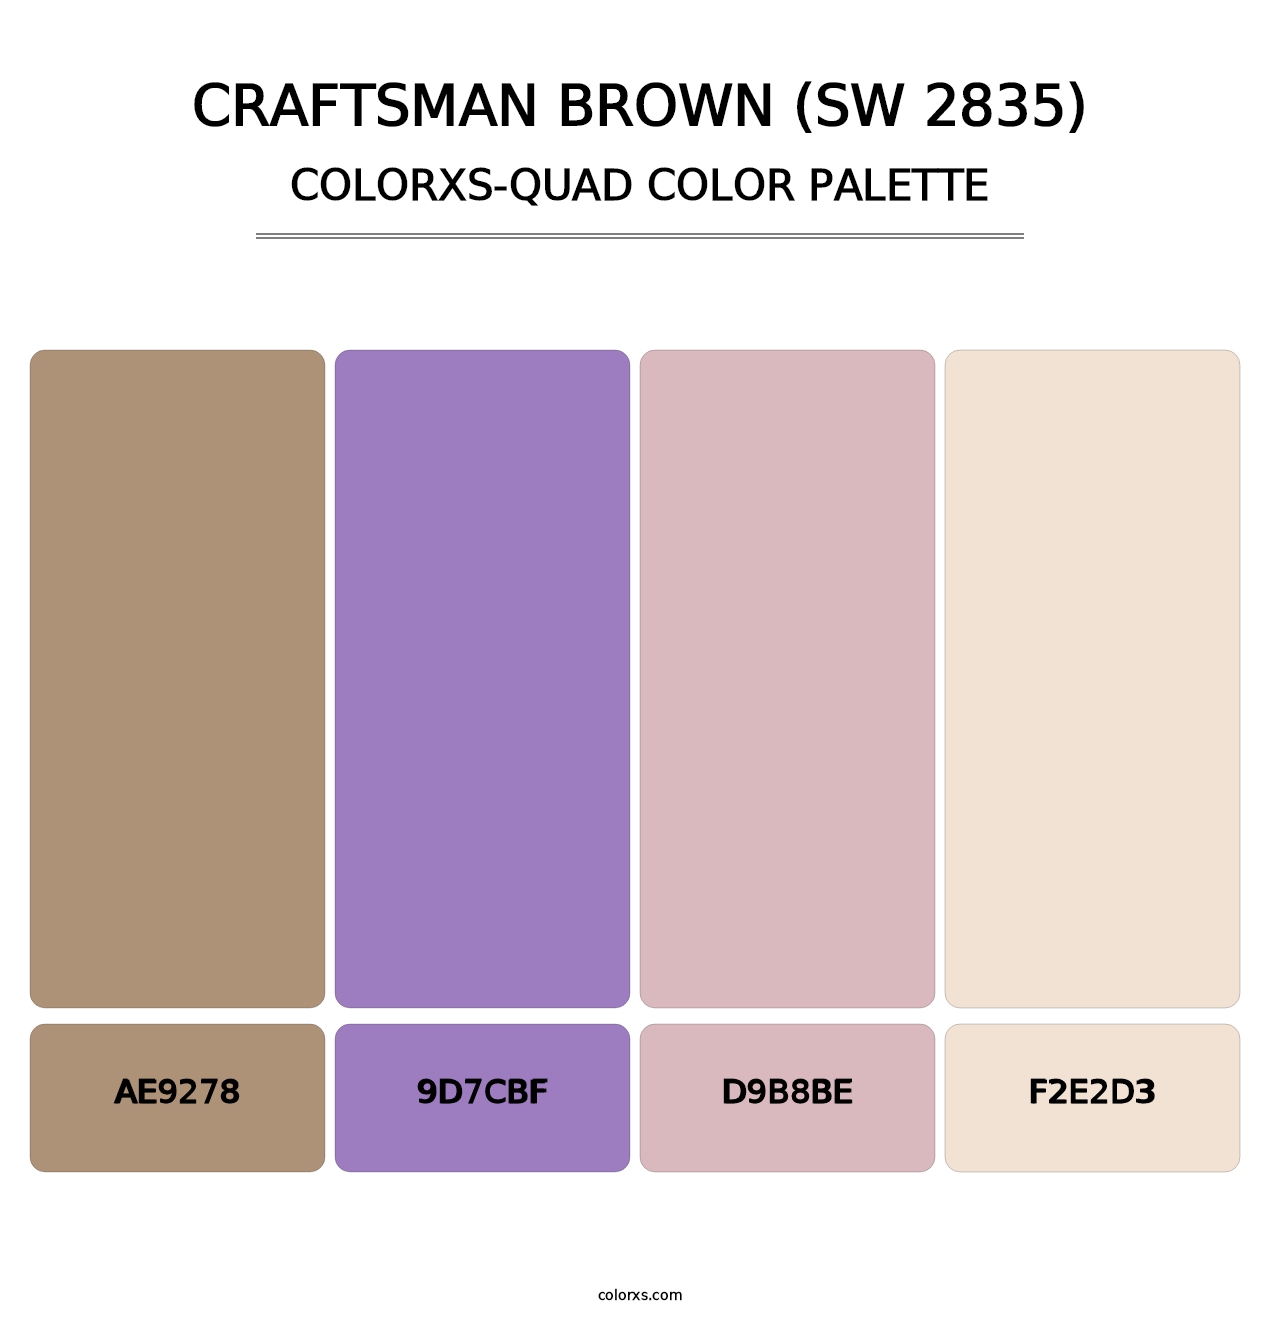 Craftsman Brown (SW 2835) - Colorxs Quad Palette